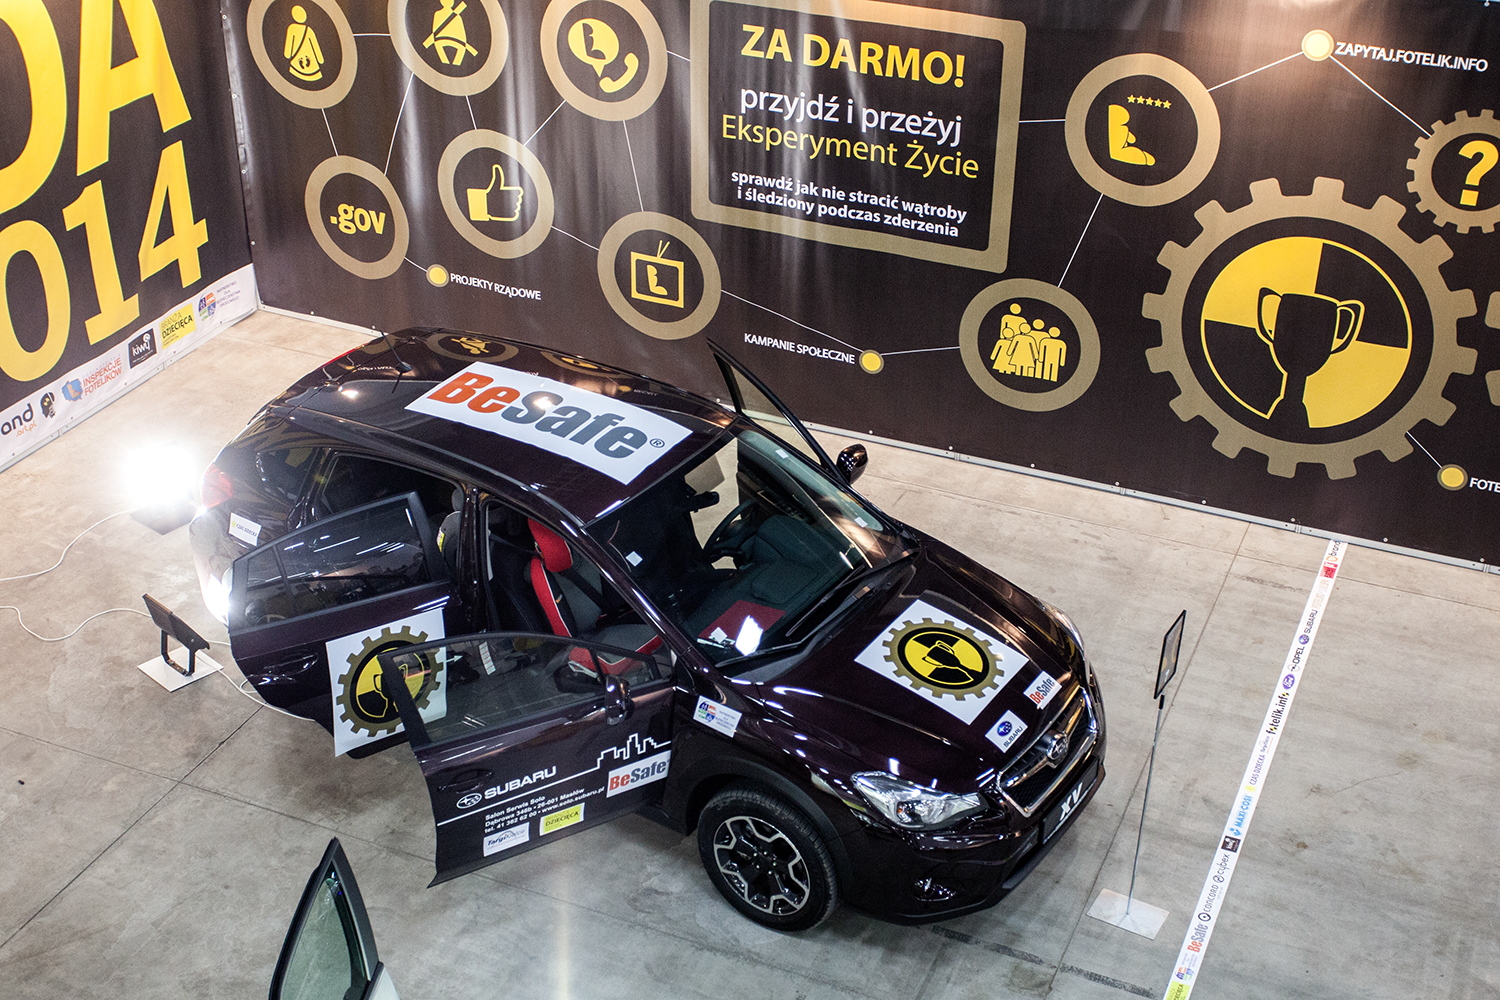 Samochód Subaru XV dostarczony przez dealera Solo sp. z o.o. w Kielcach na Targi Czas Dziecka 2014